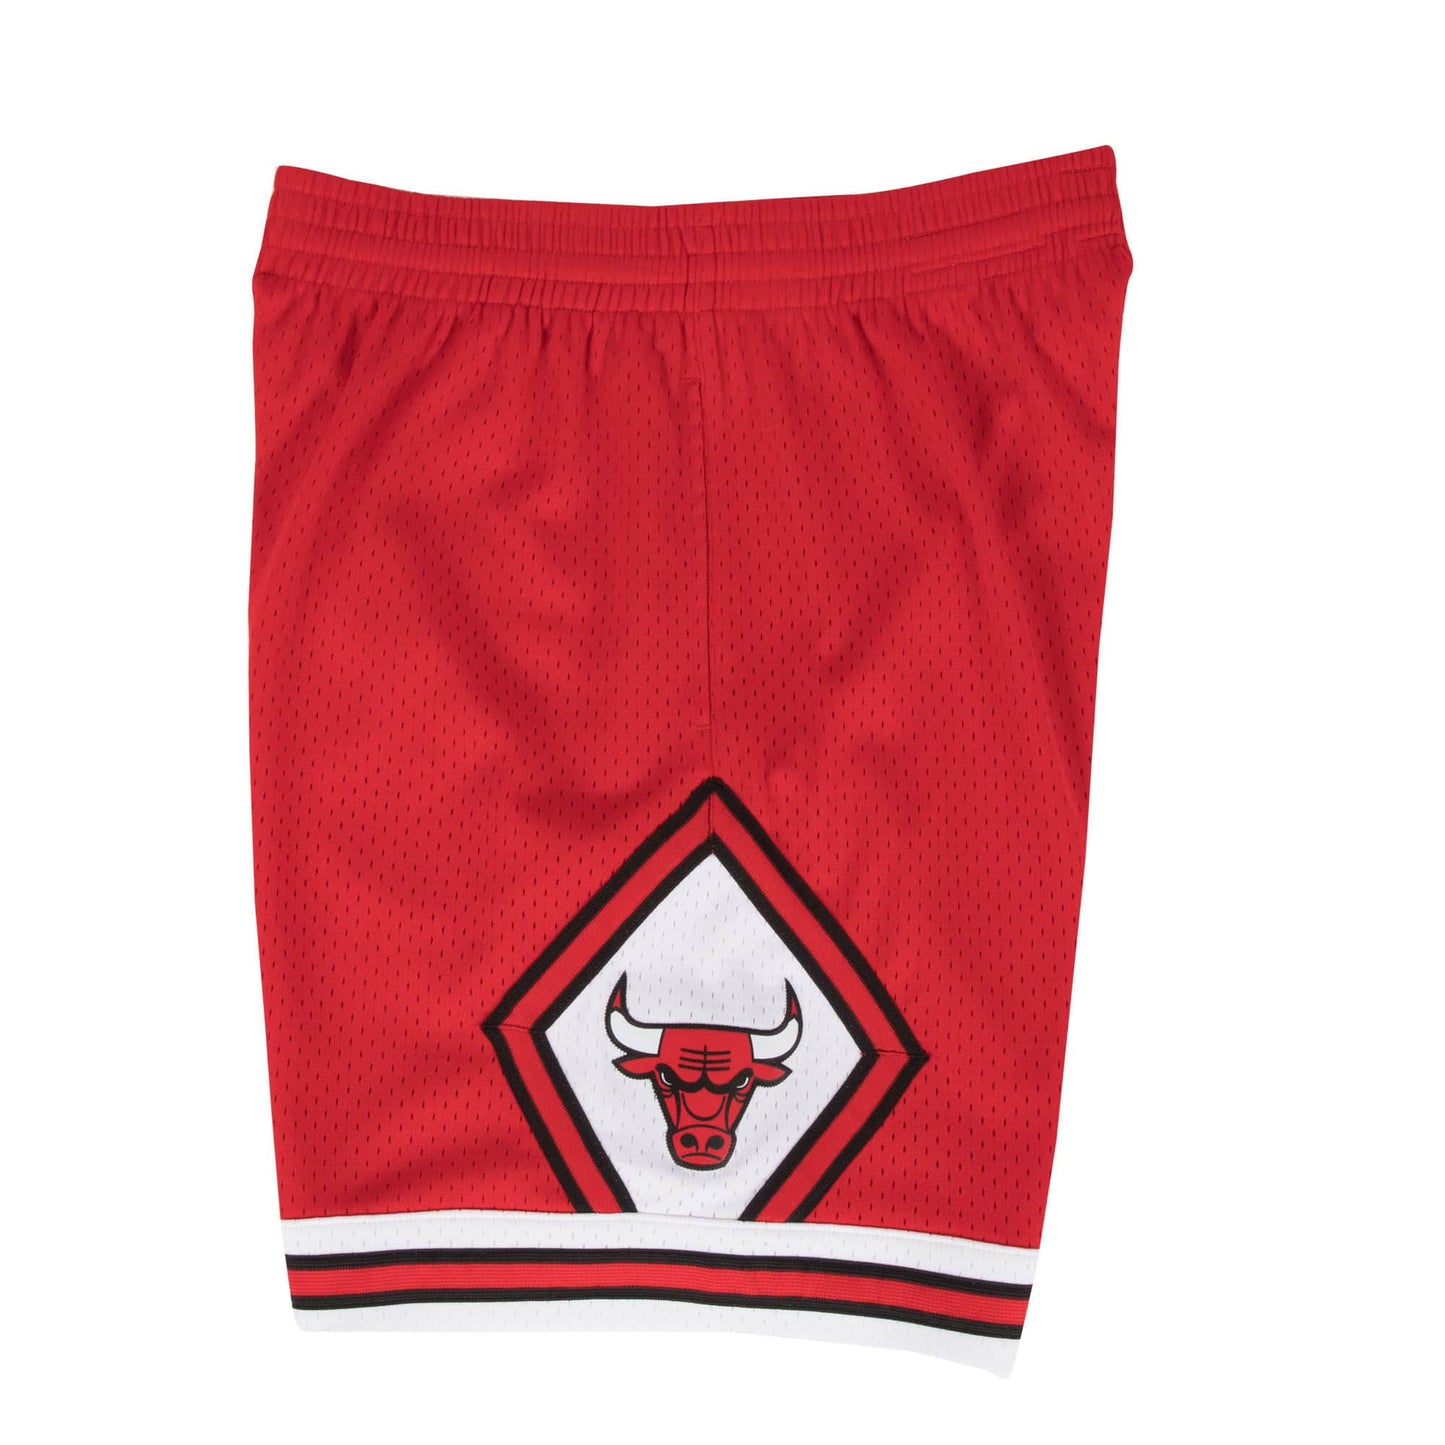 Chicago Bulls Mitchell and Ness Swingman Shorts - 1997/98